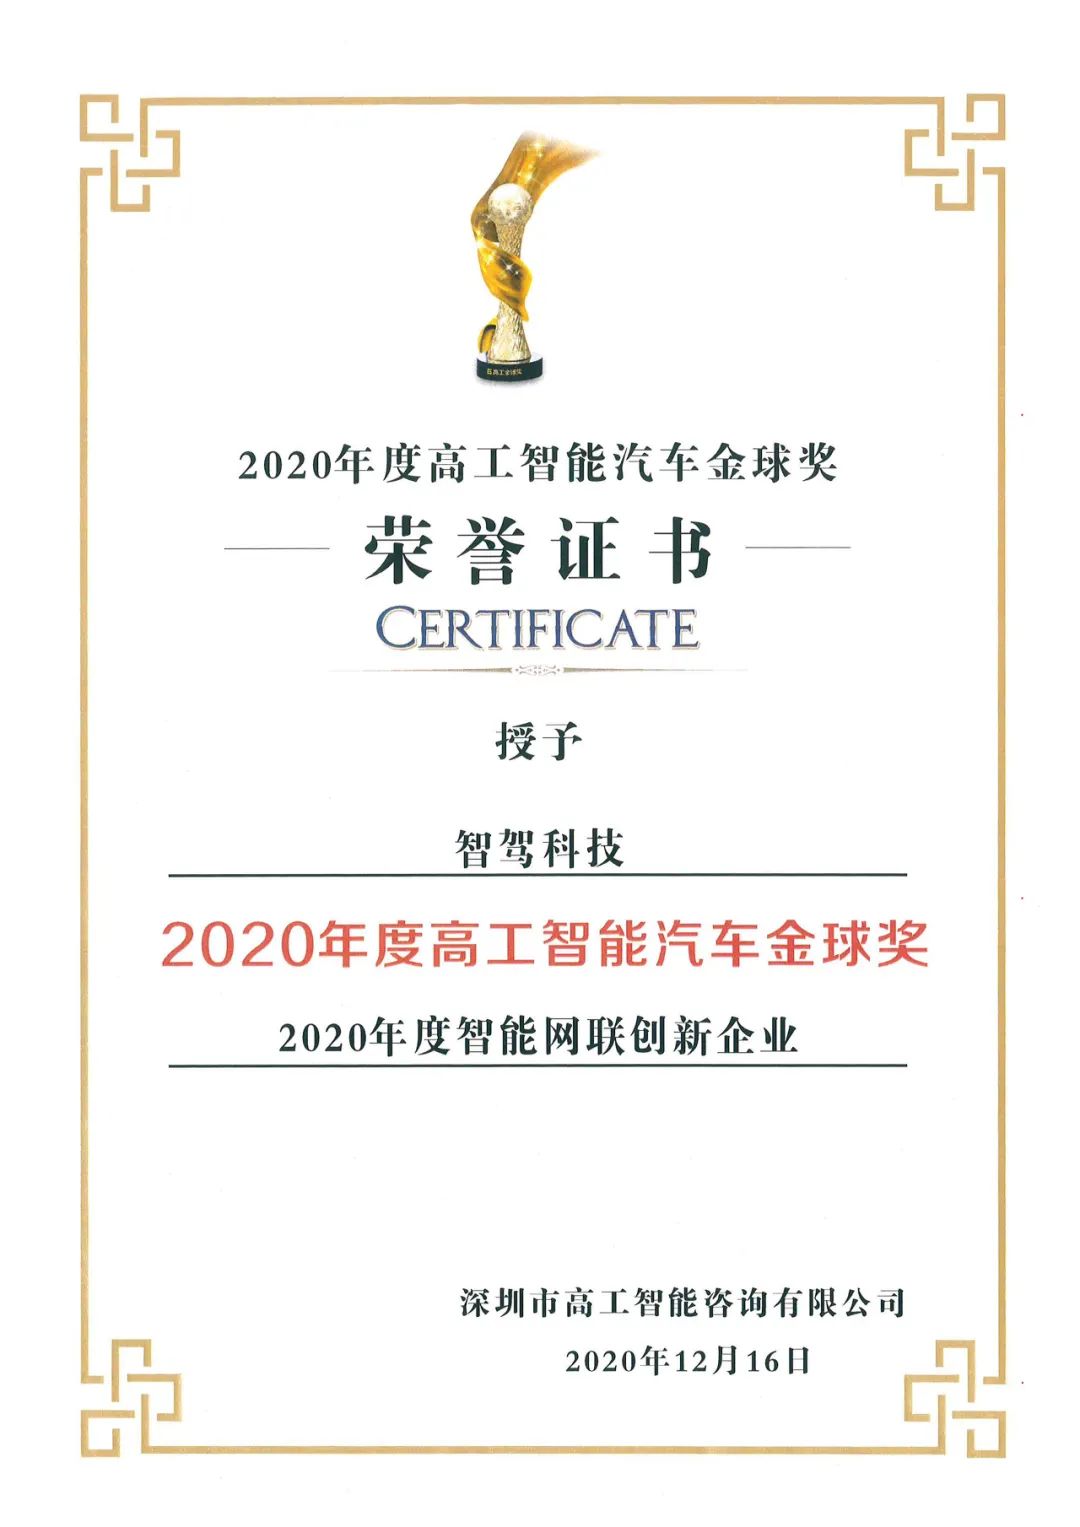 智驾科技MAXIEYE获评“2020年度智能网联创新企业”奖(图1)